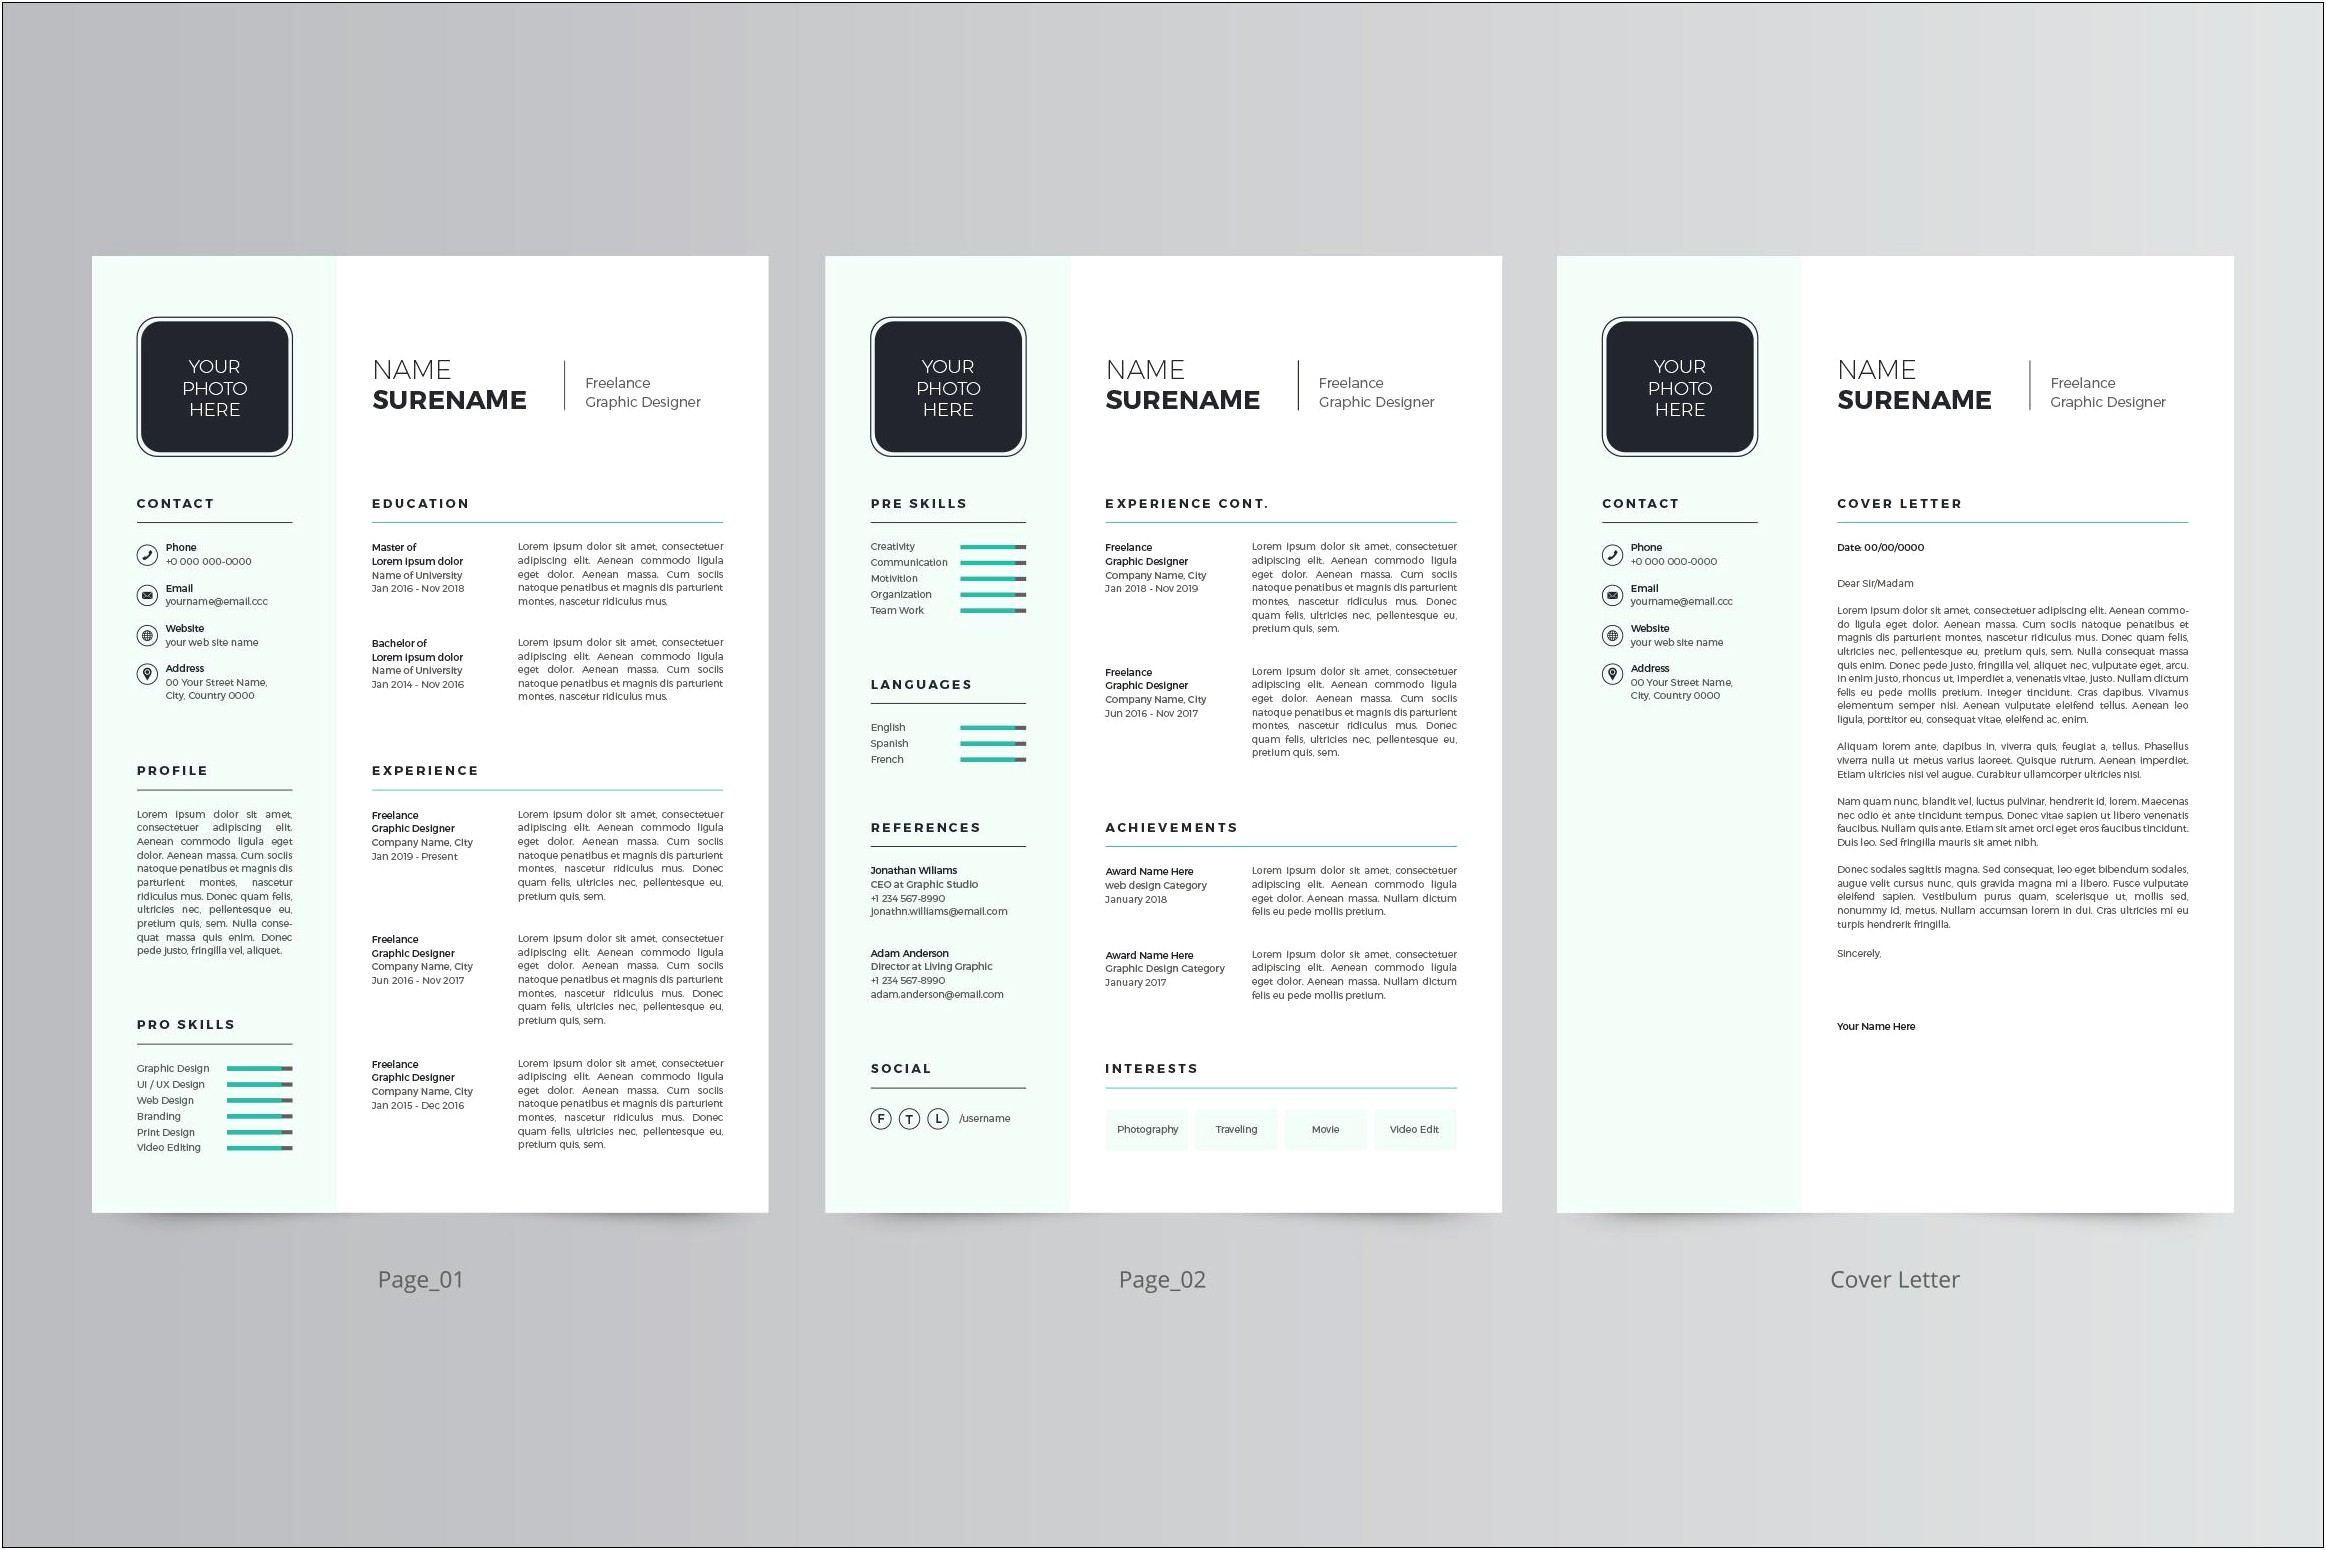 Sample Graphic Design Resume 2018